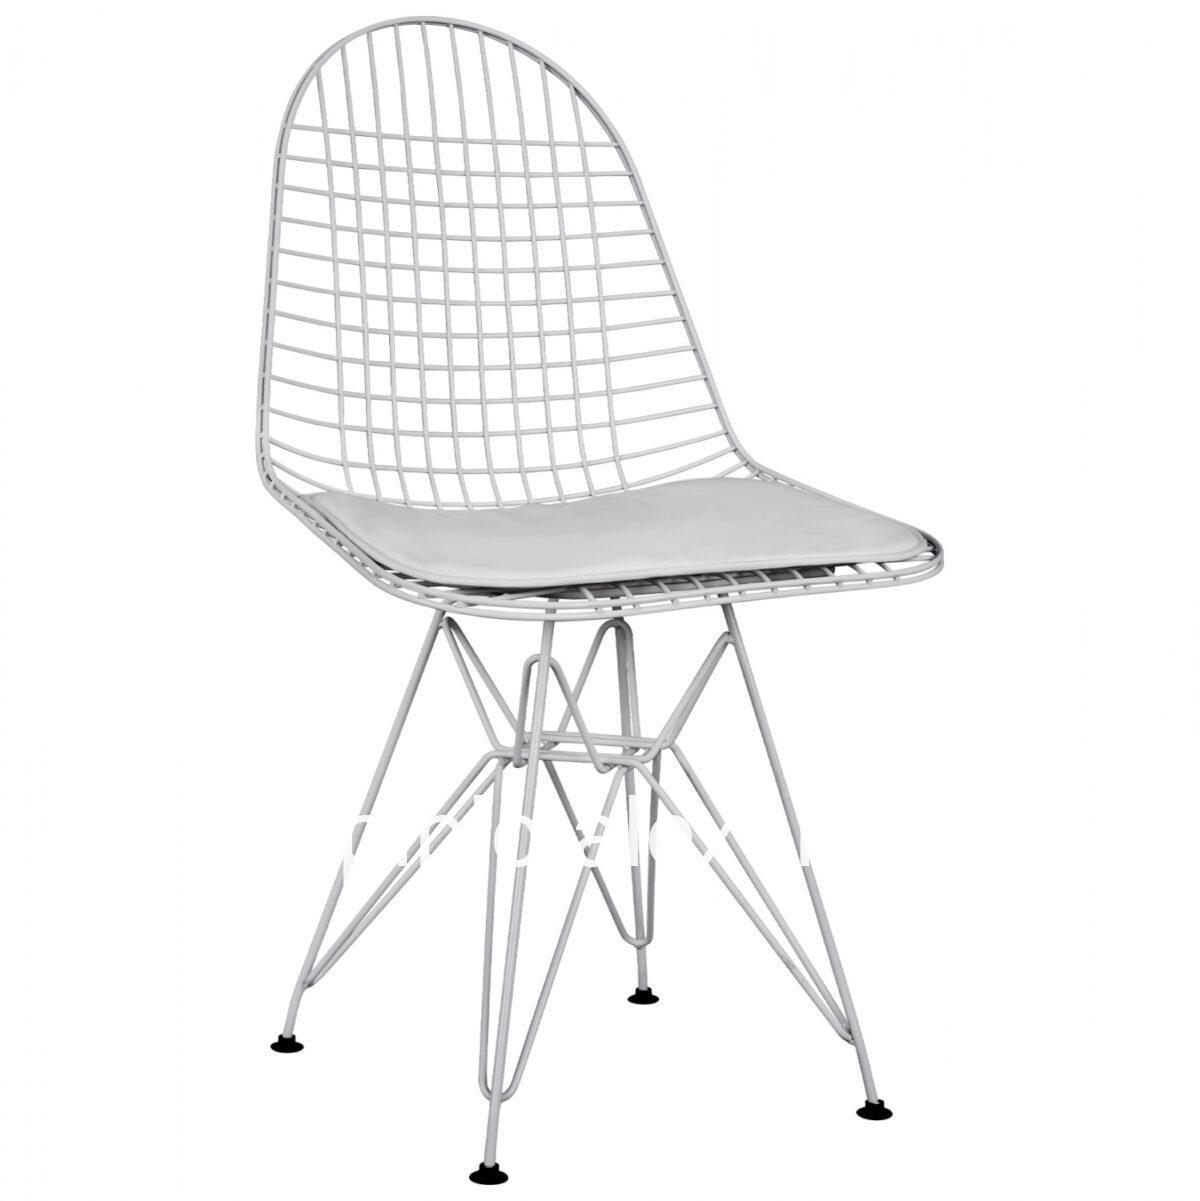 Chair Metallic white with pillow HM8230.01 49x52x85